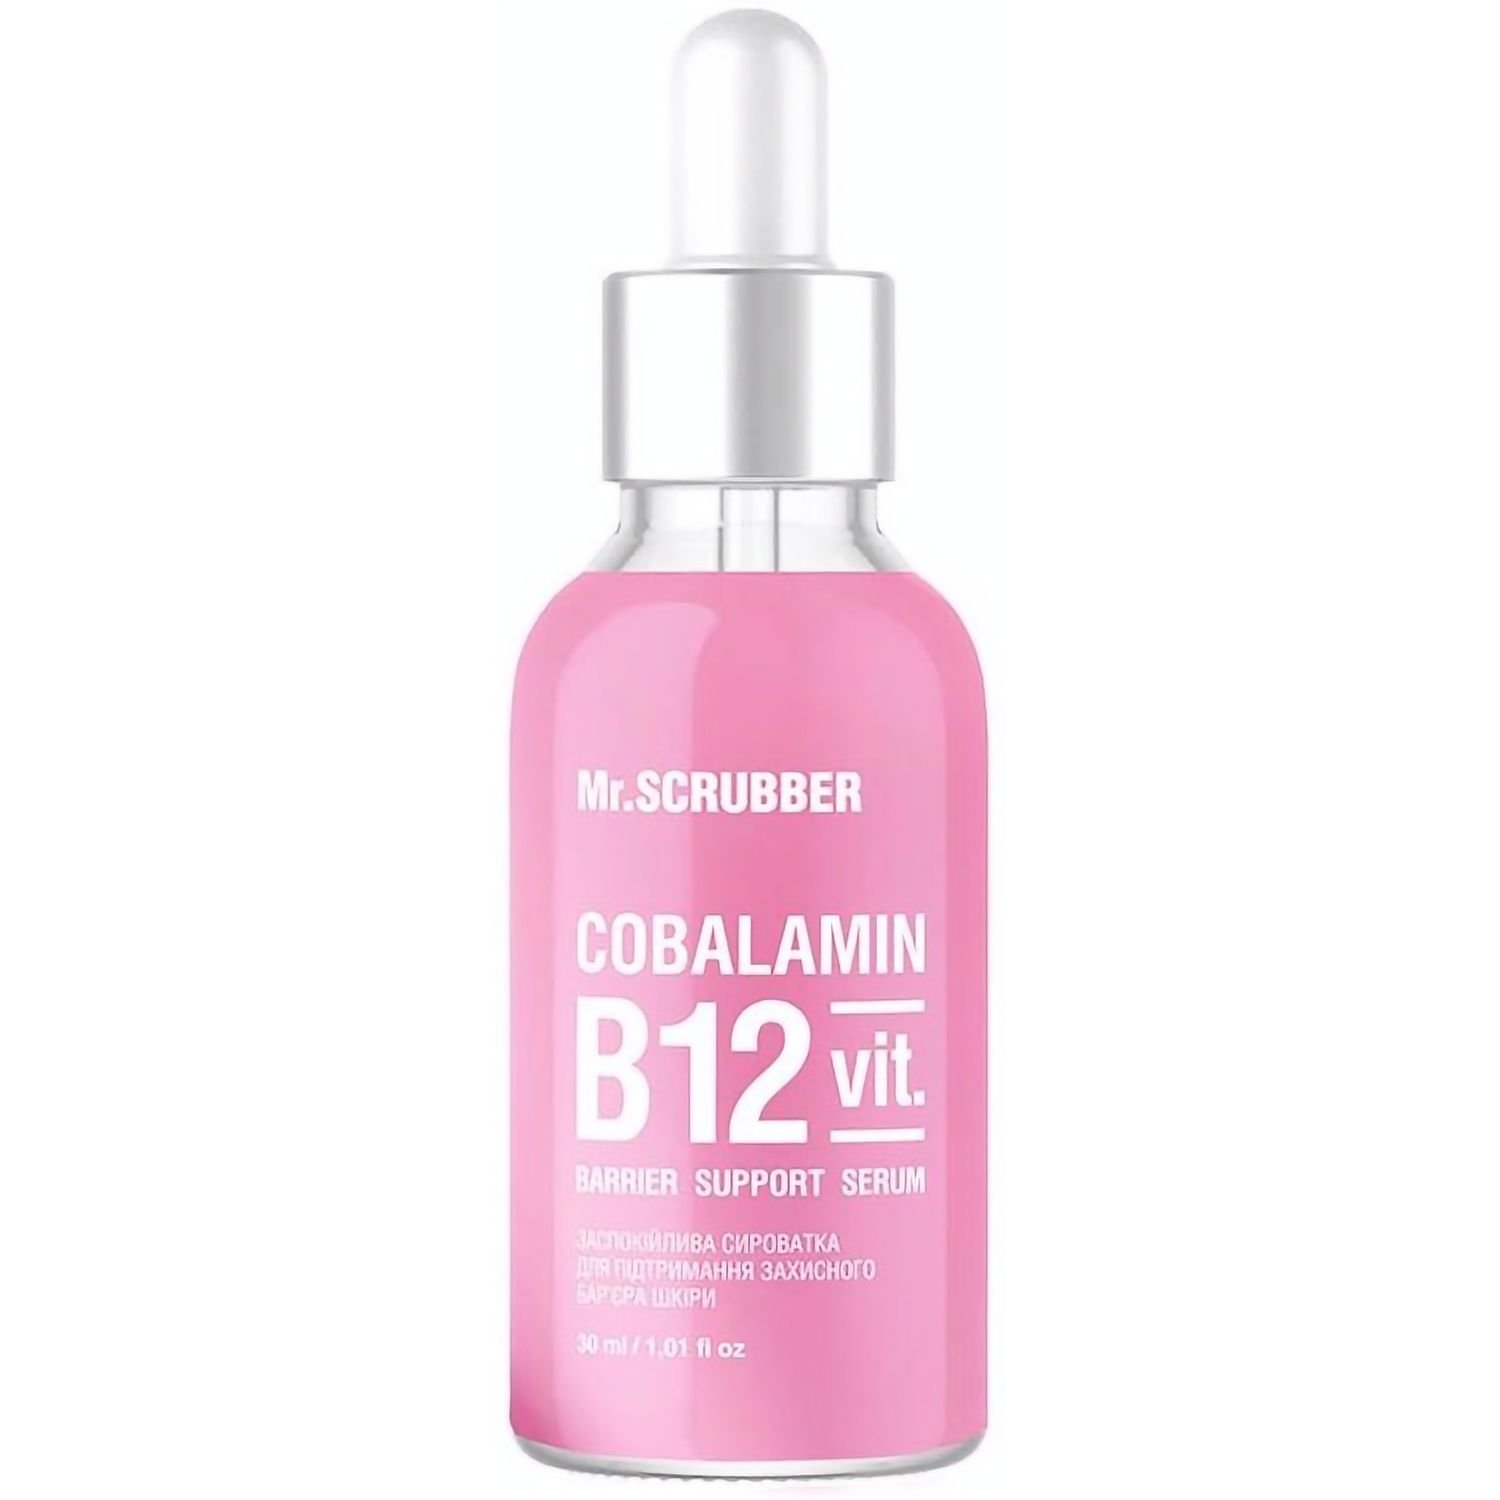 Успокаивающая сыворотка Mr.Scrubber Cobalamin B12 для поддержания защитного барьера кожи лица 30 мл - фото 1